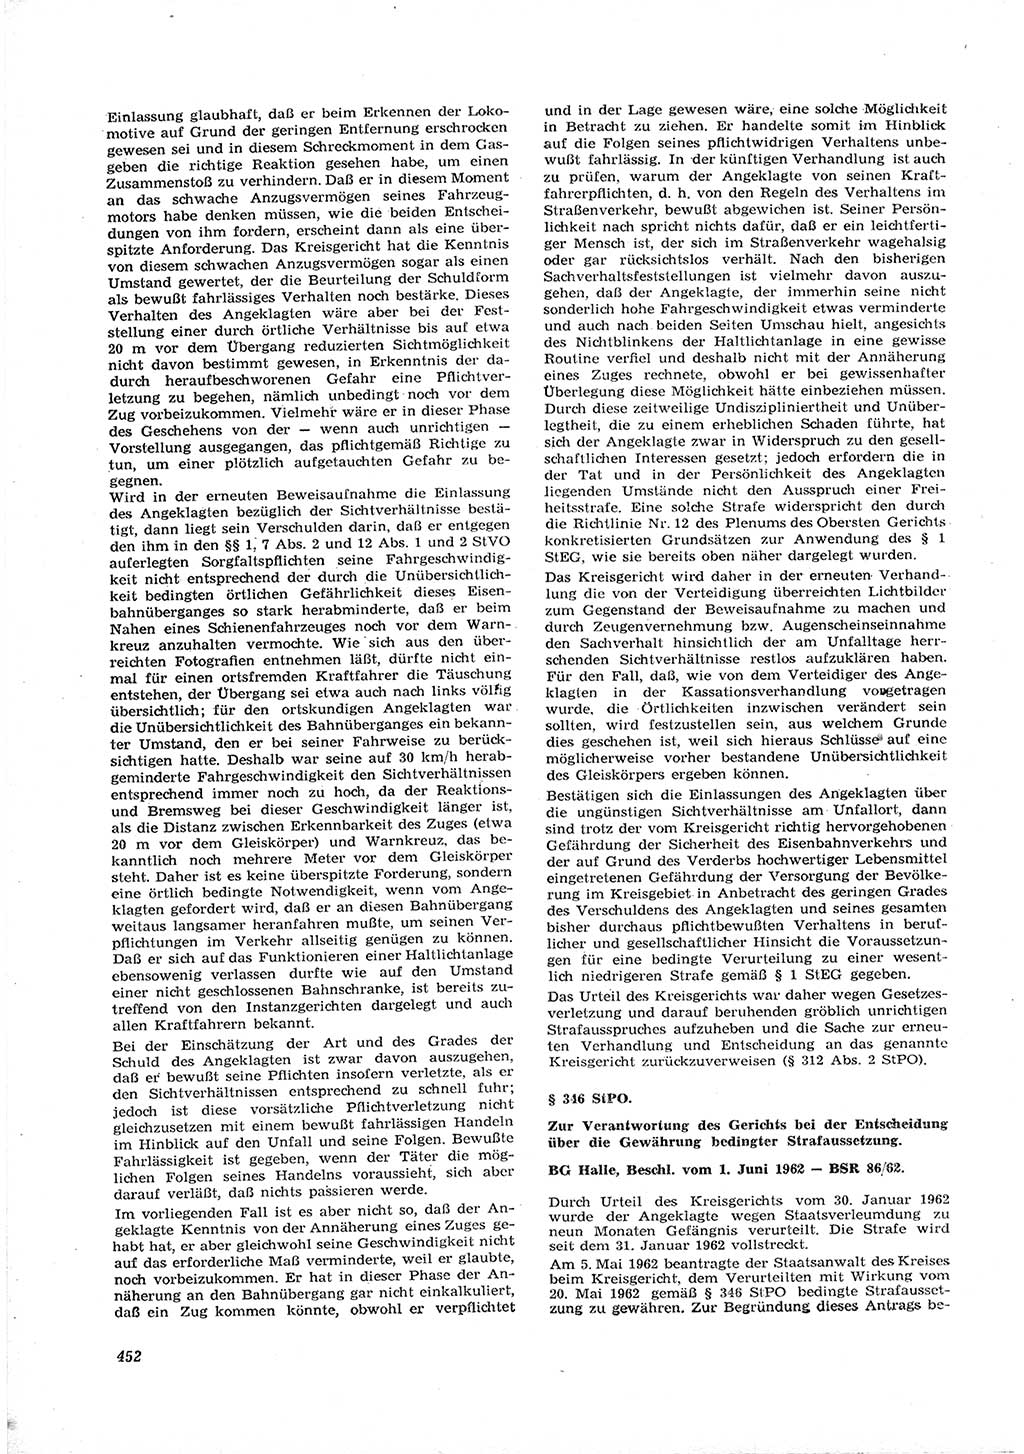 Neue Justiz (NJ), Zeitschrift für Recht und Rechtswissenschaft [Deutsche Demokratische Republik (DDR)], 16. Jahrgang 1962, Seite 452 (NJ DDR 1962, S. 452)